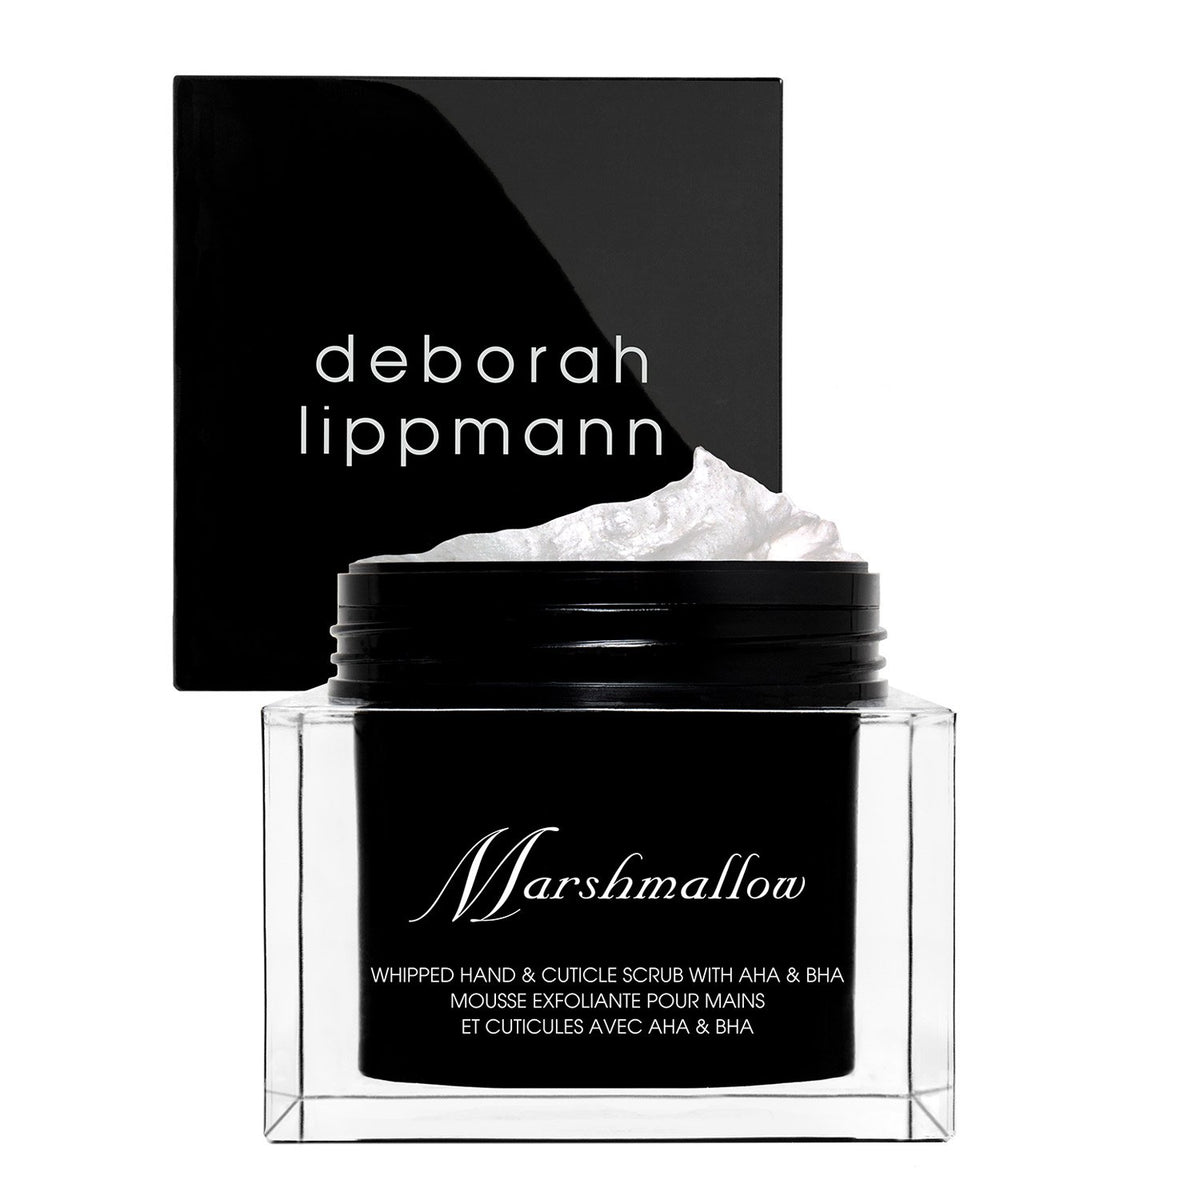 Marshmallow - Deborah Lippmann